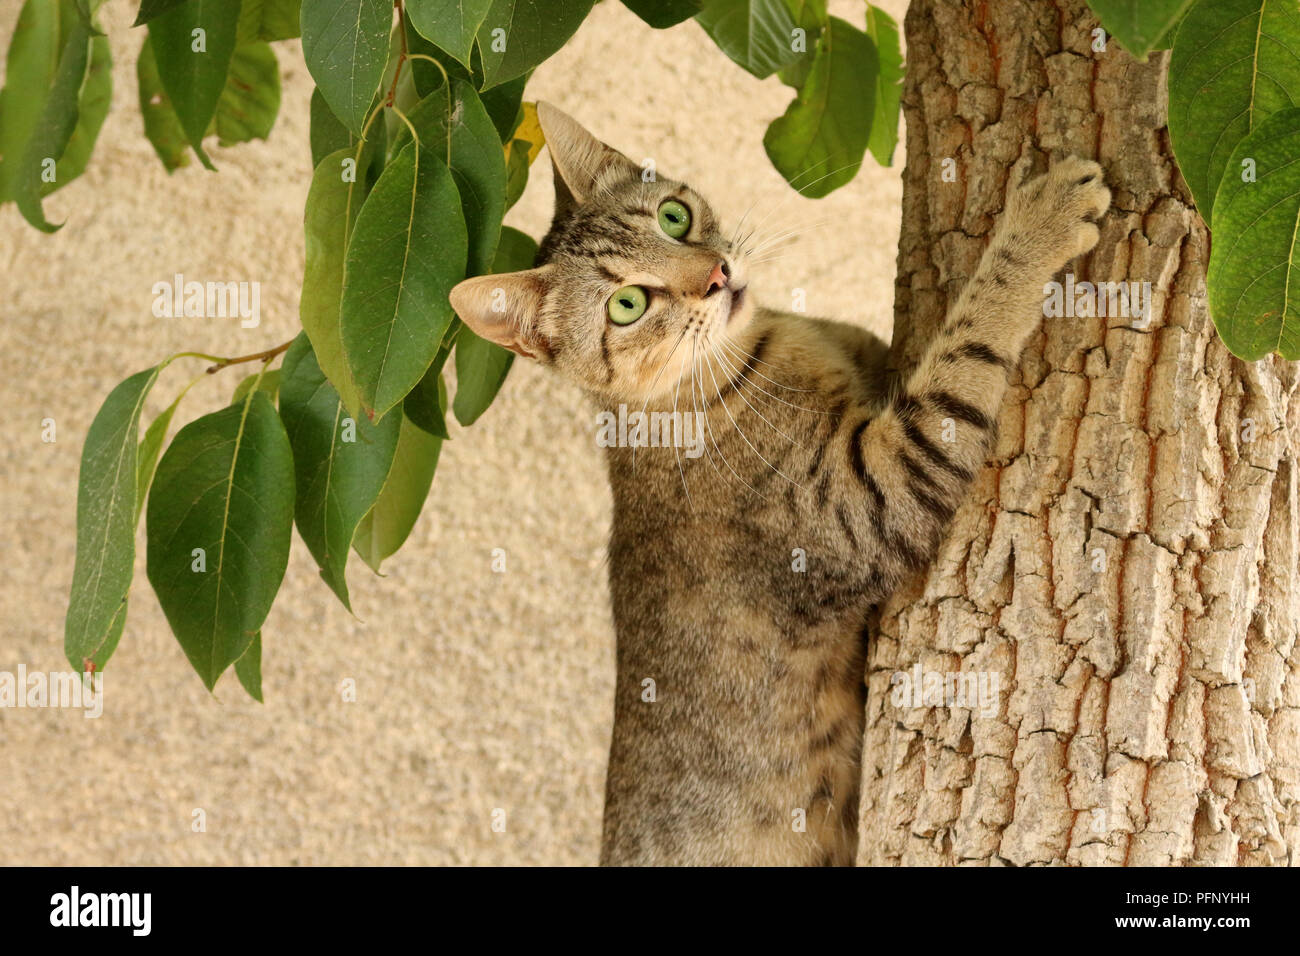 domestic cat, black tabby, climbing a tree Stock Photo